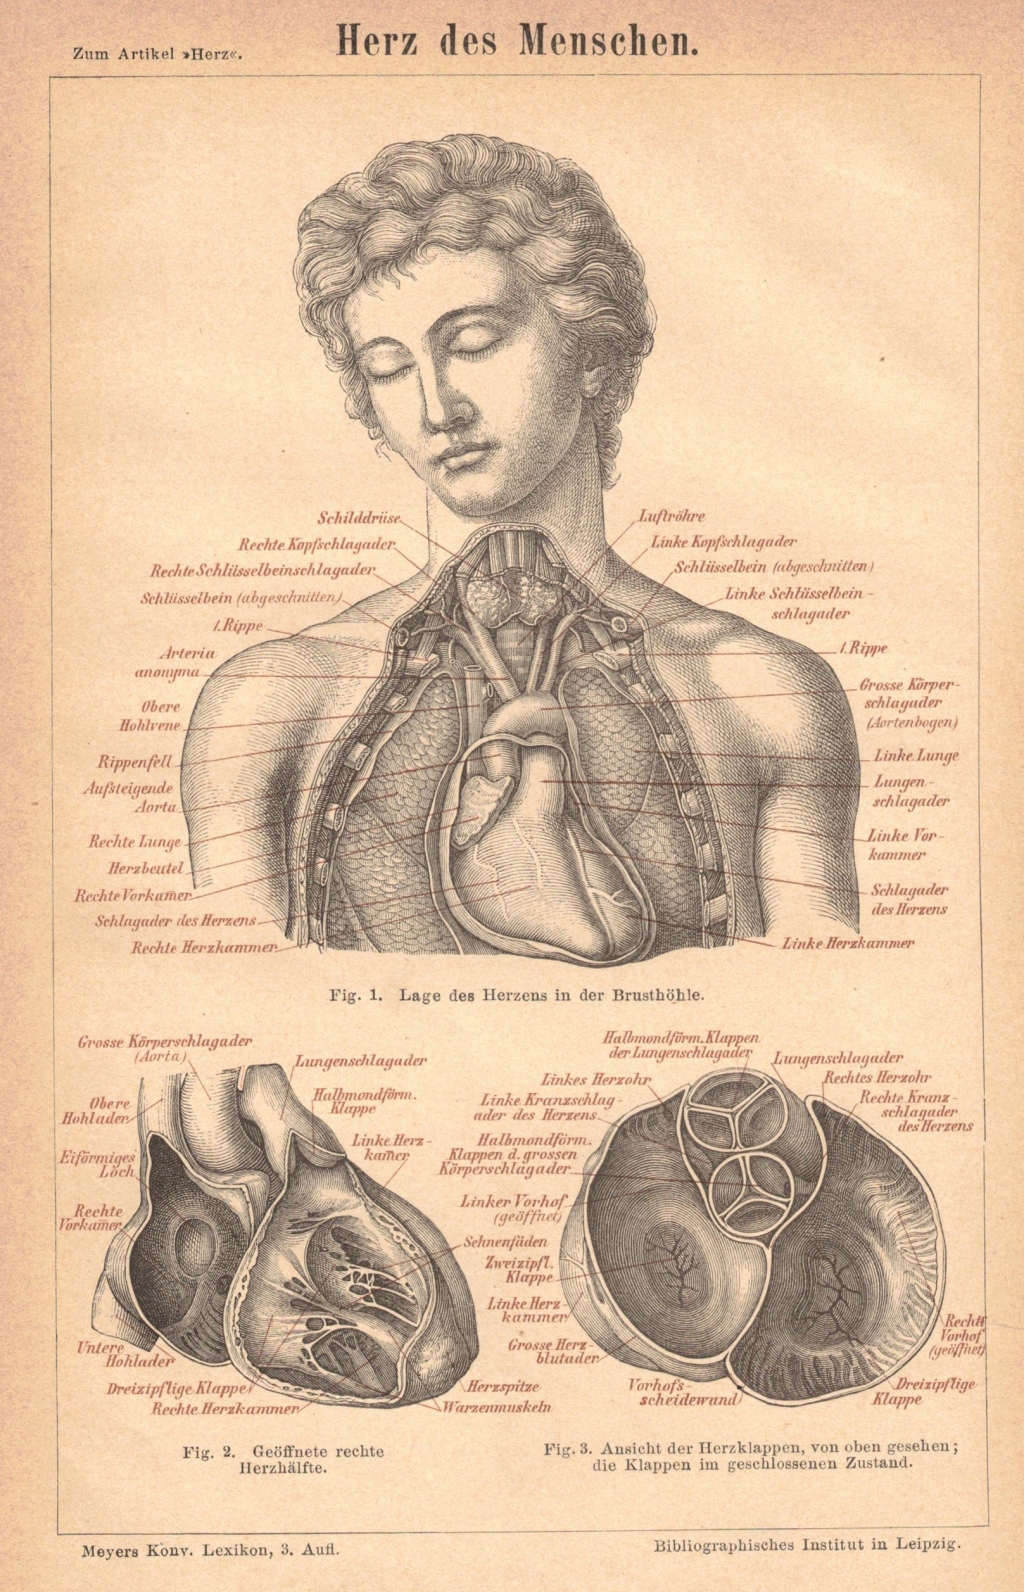 [rycina, 1876] Herz des Menschen [serce człowieka]